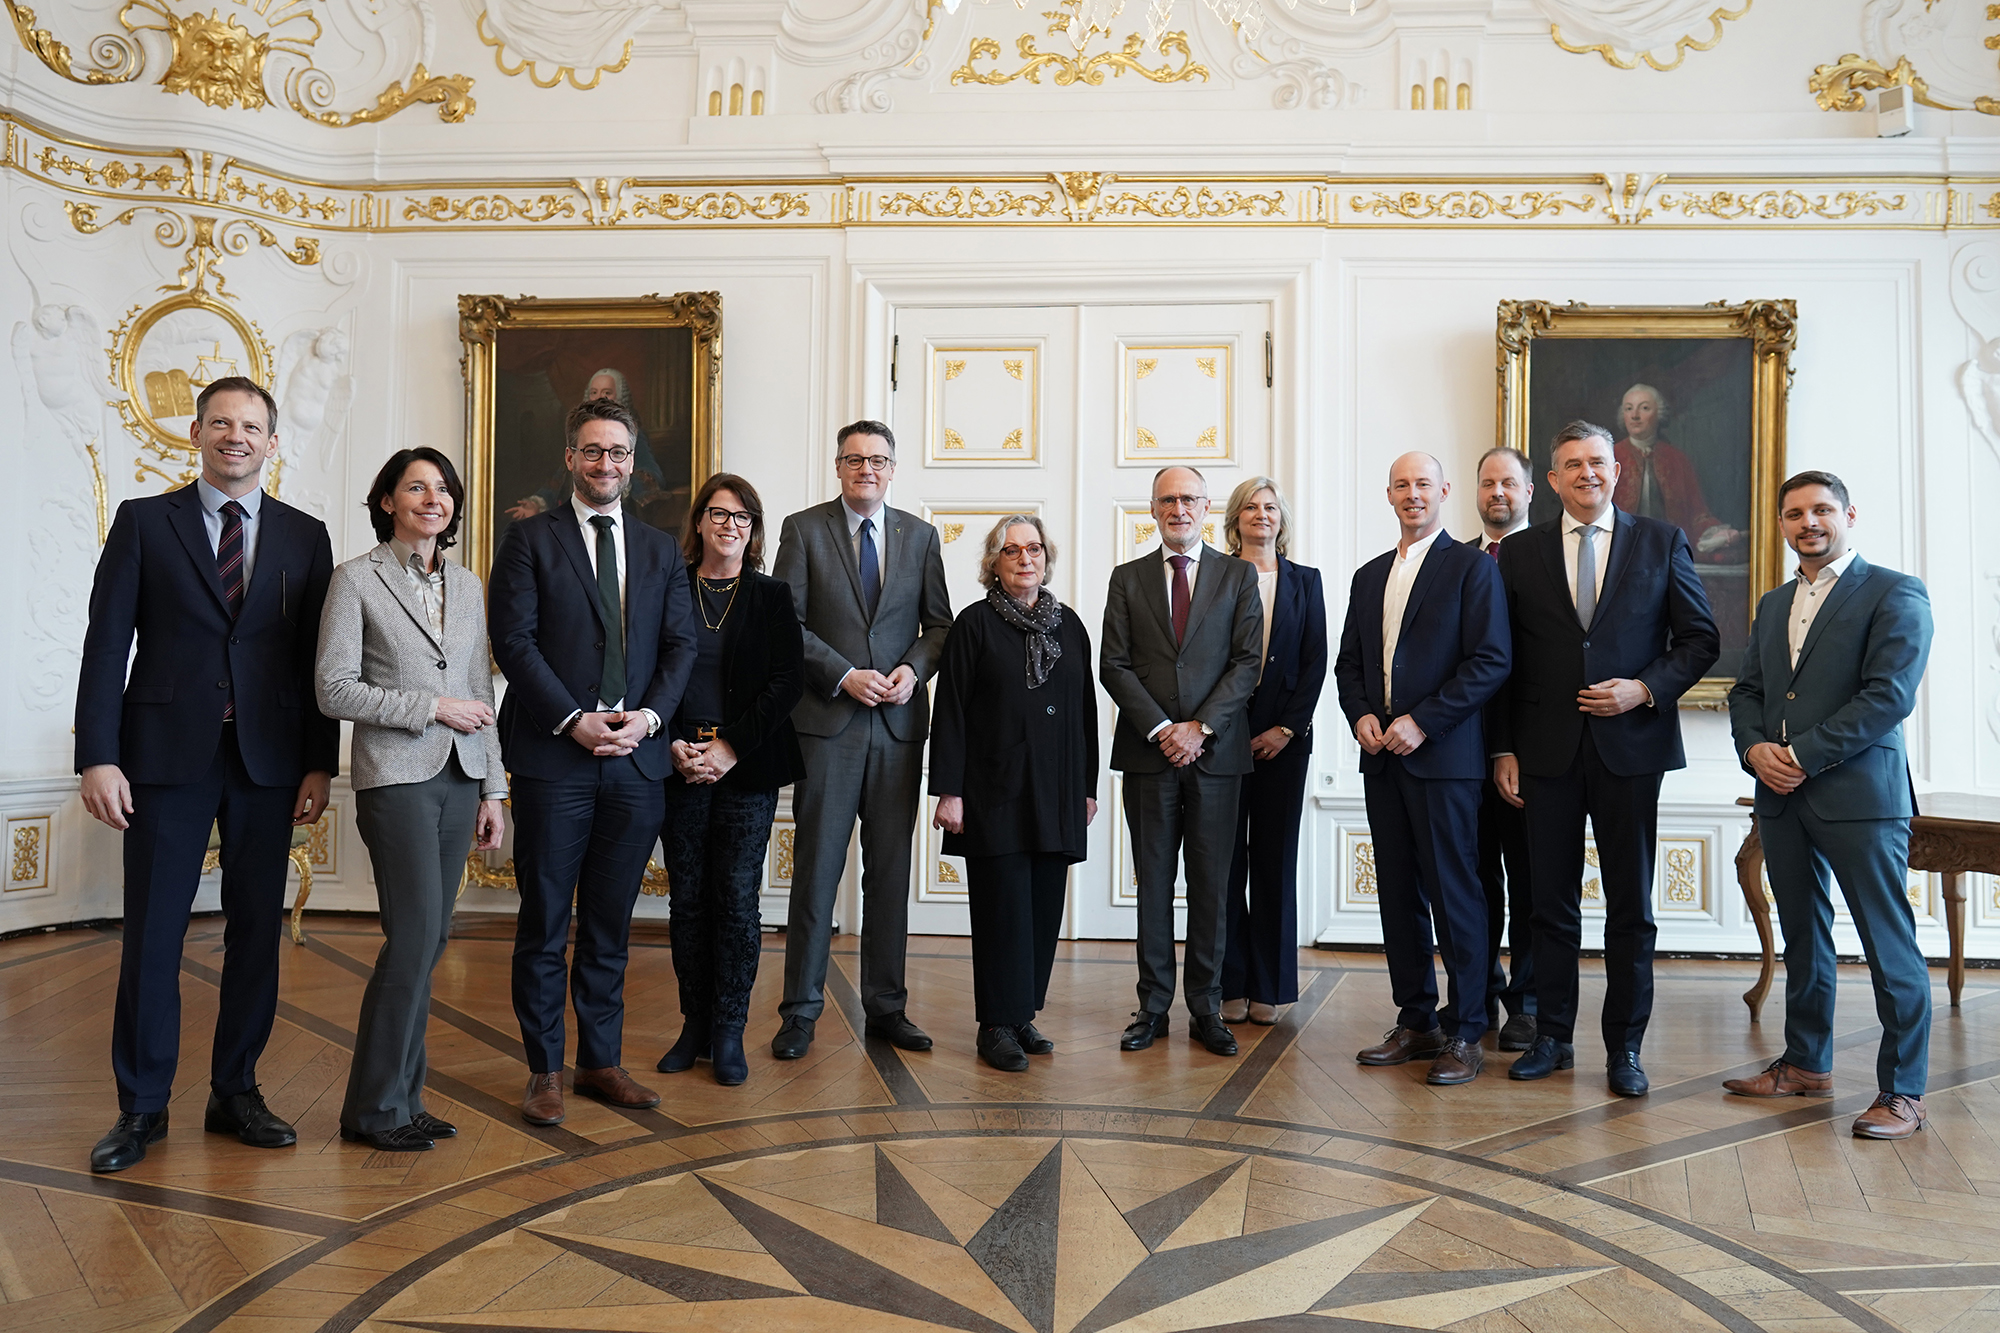 Botschafter Geert Muylle (7vl) mit Vertretern aus der ganzen Euregio (Bild: Jane Kaimer/Stadt Aachen)